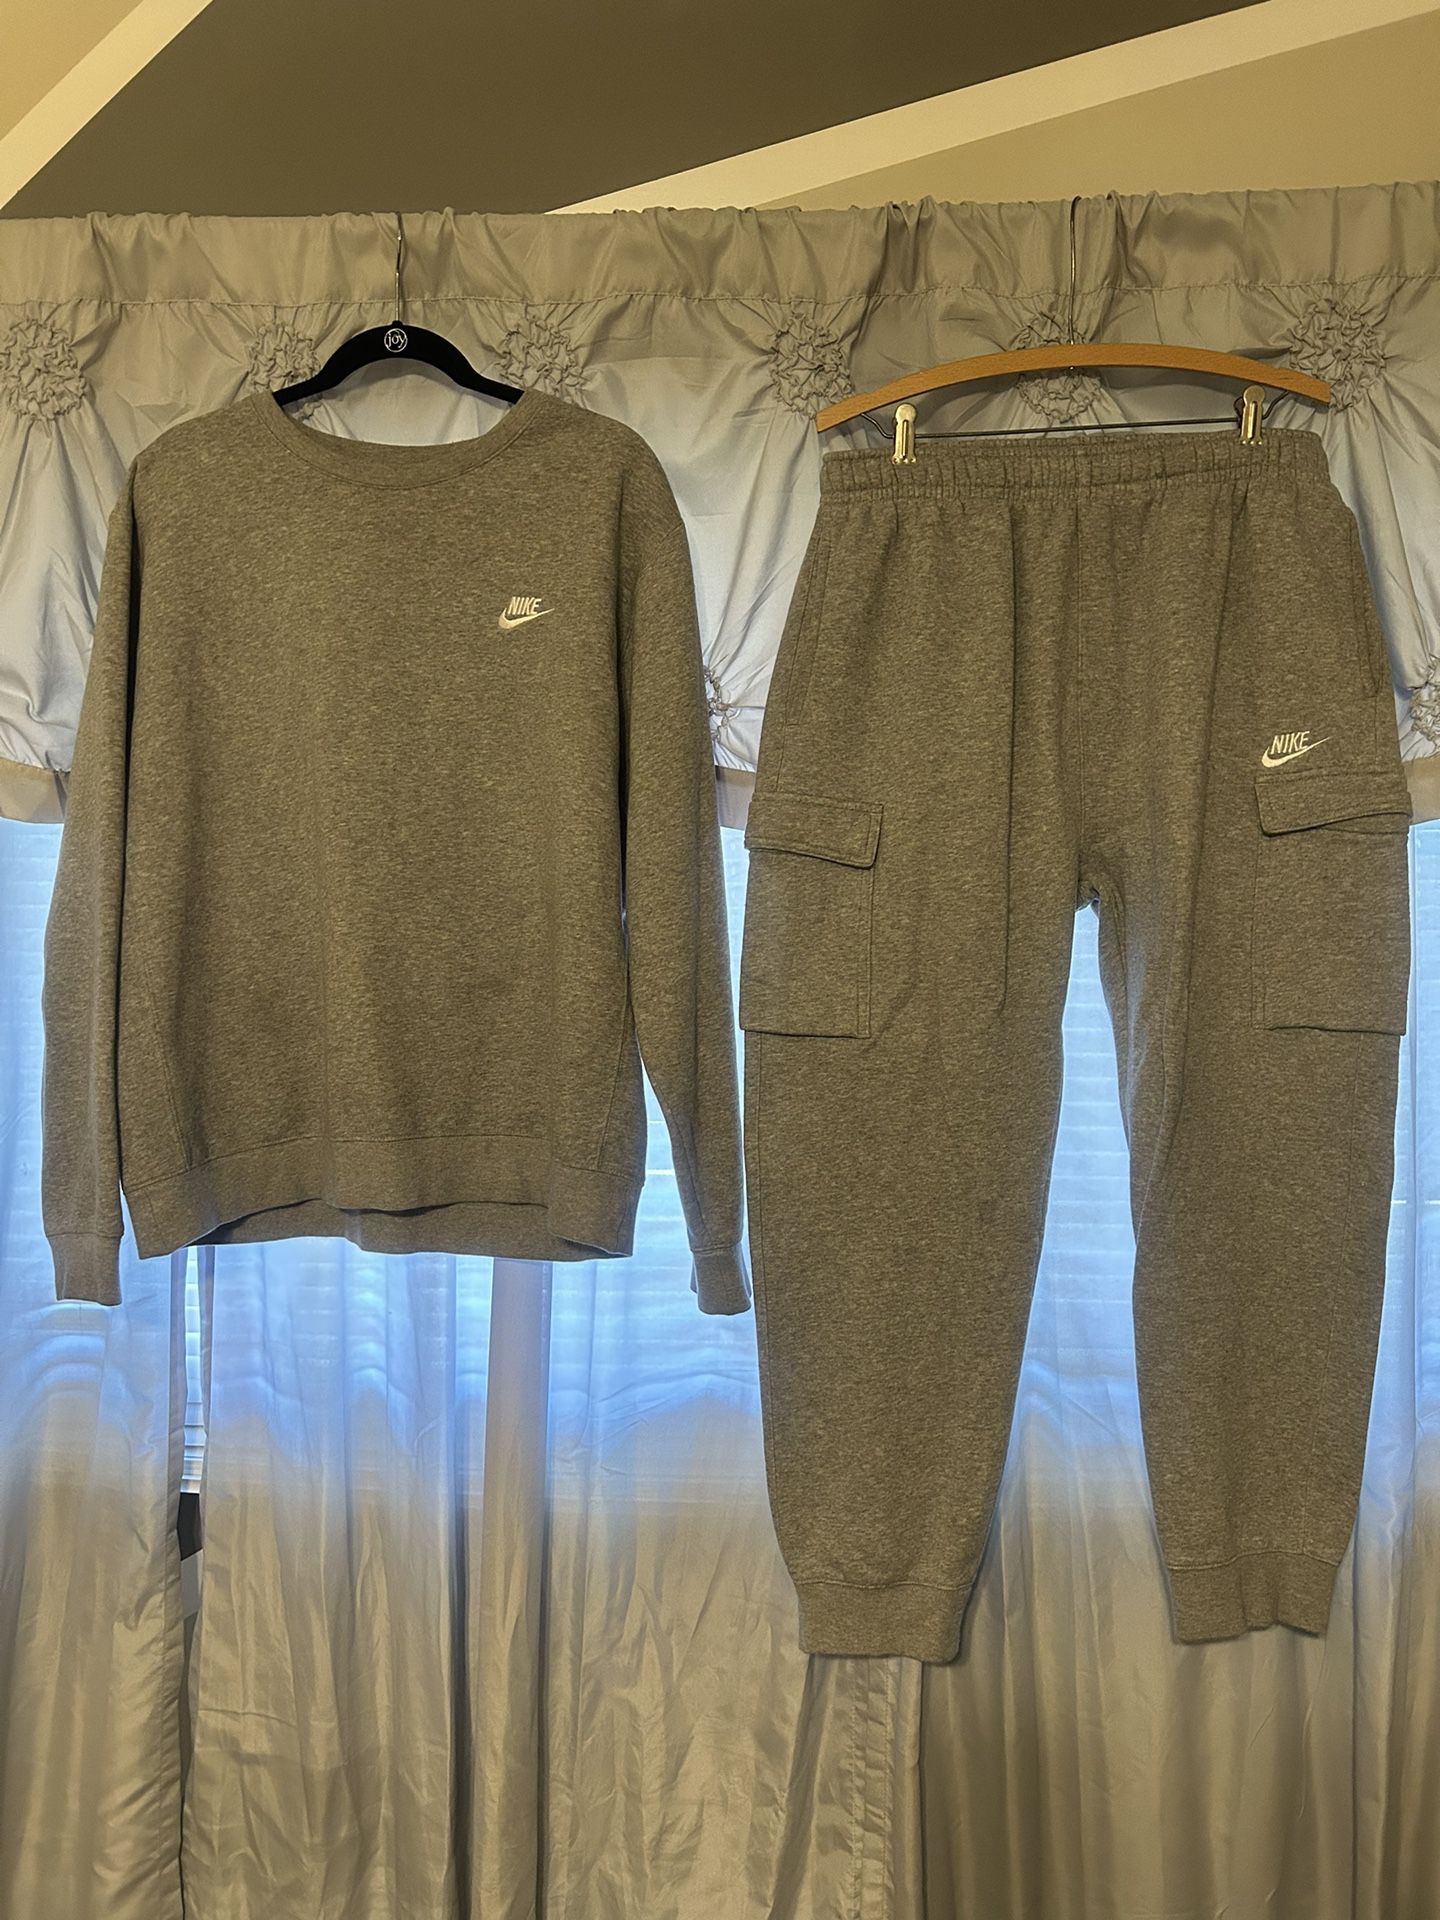 Nike Fleece Sweatsuit 2 Piece Set Light Gray Men Size L cargo pockets